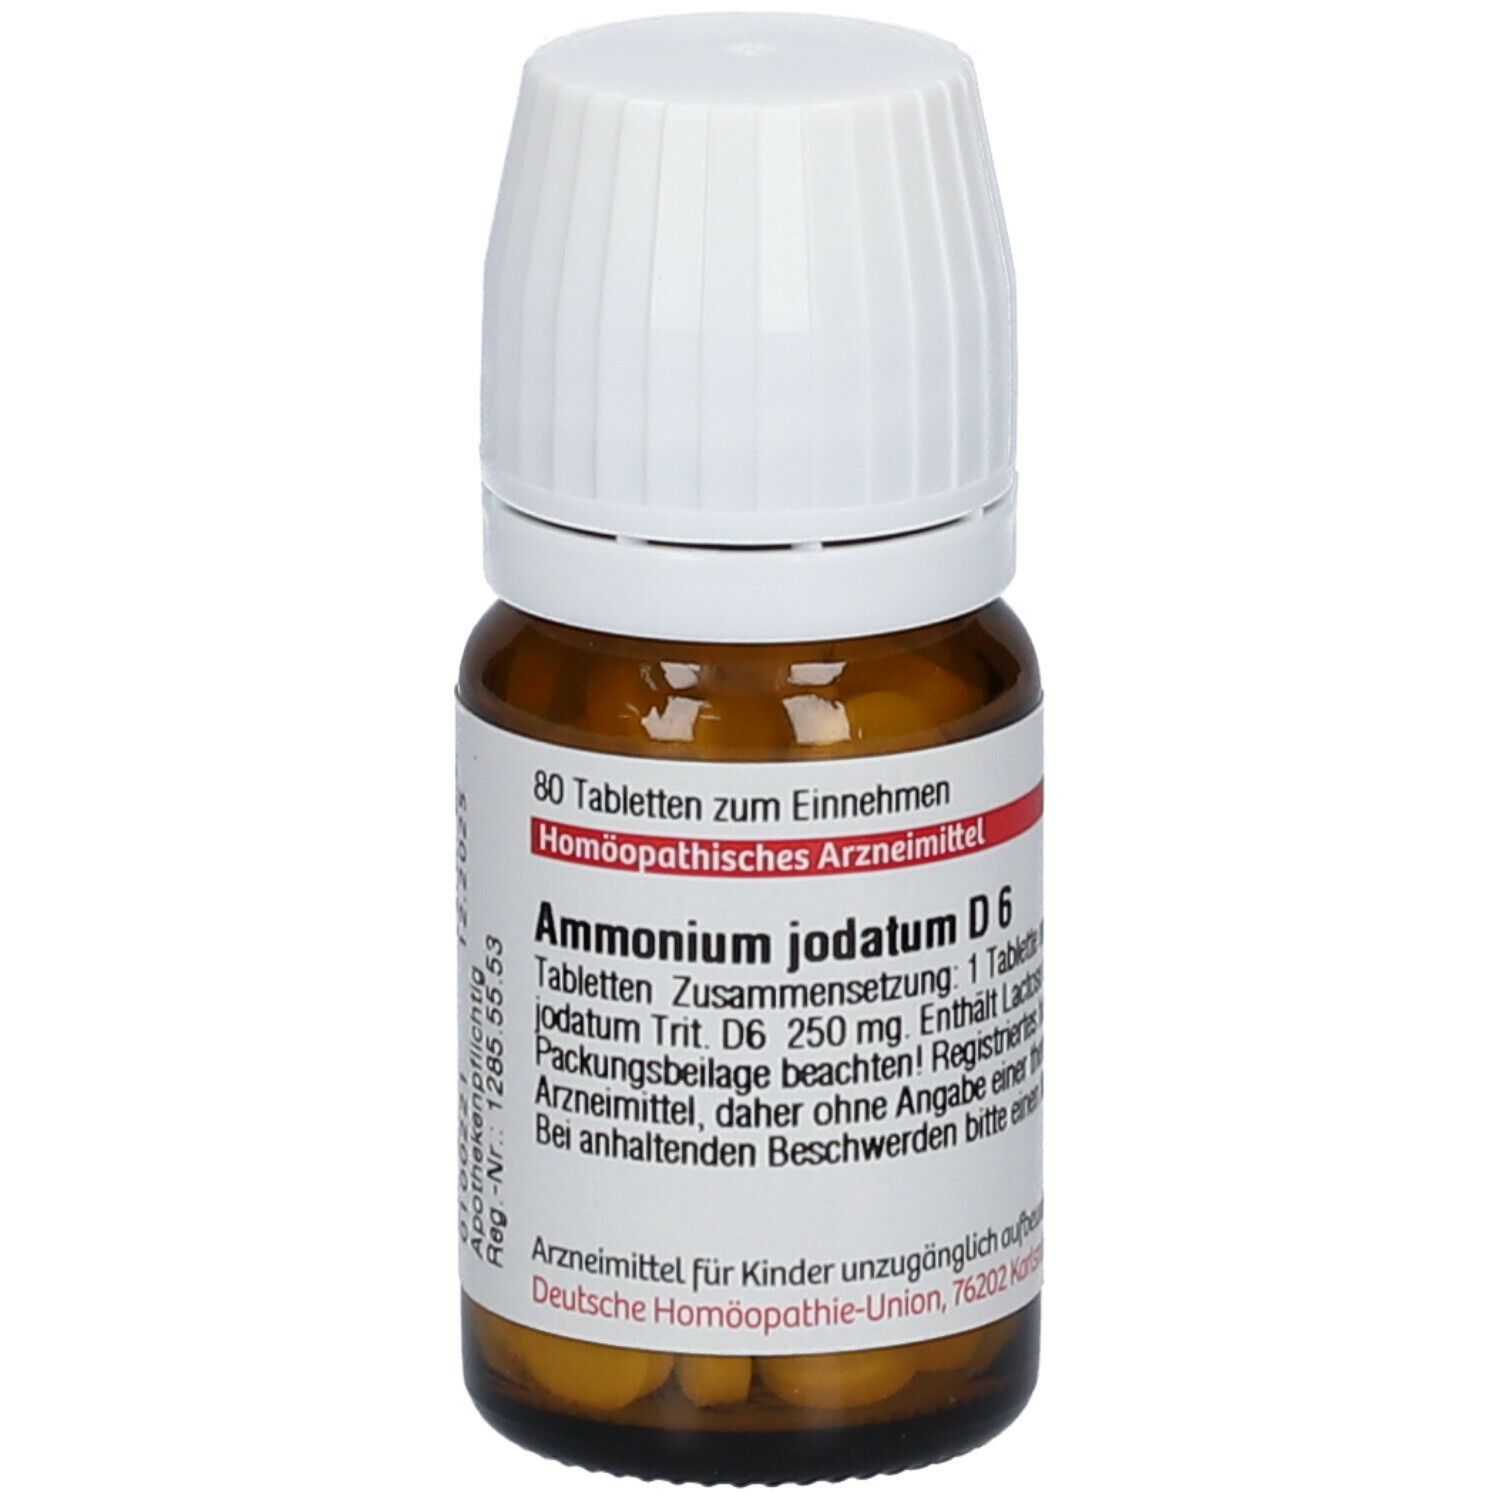 DHU Ammonium Jodatum D6